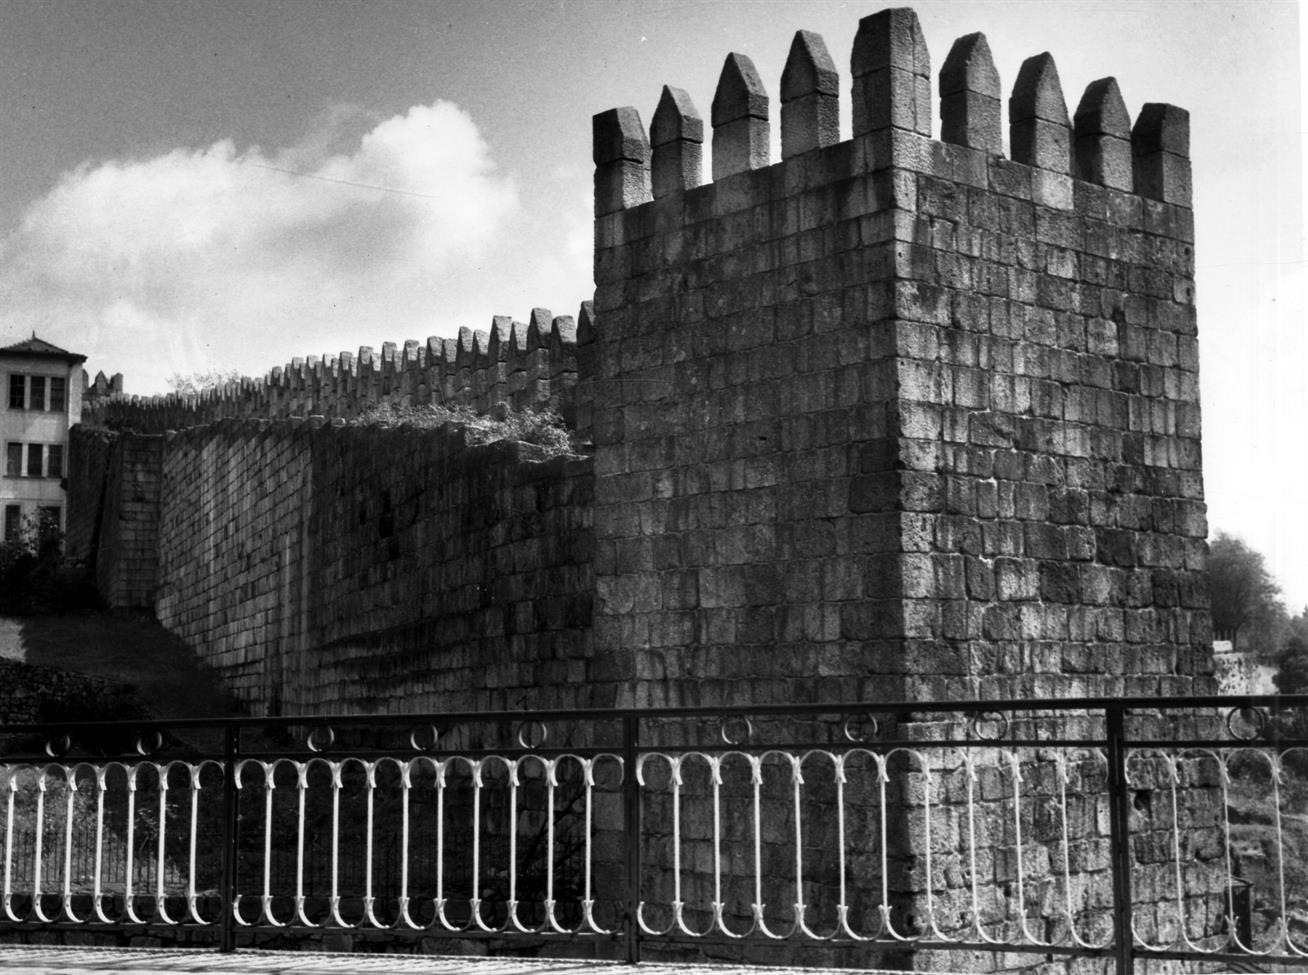 Génese e formação de Portugal : trecho das muralhas fernandinas